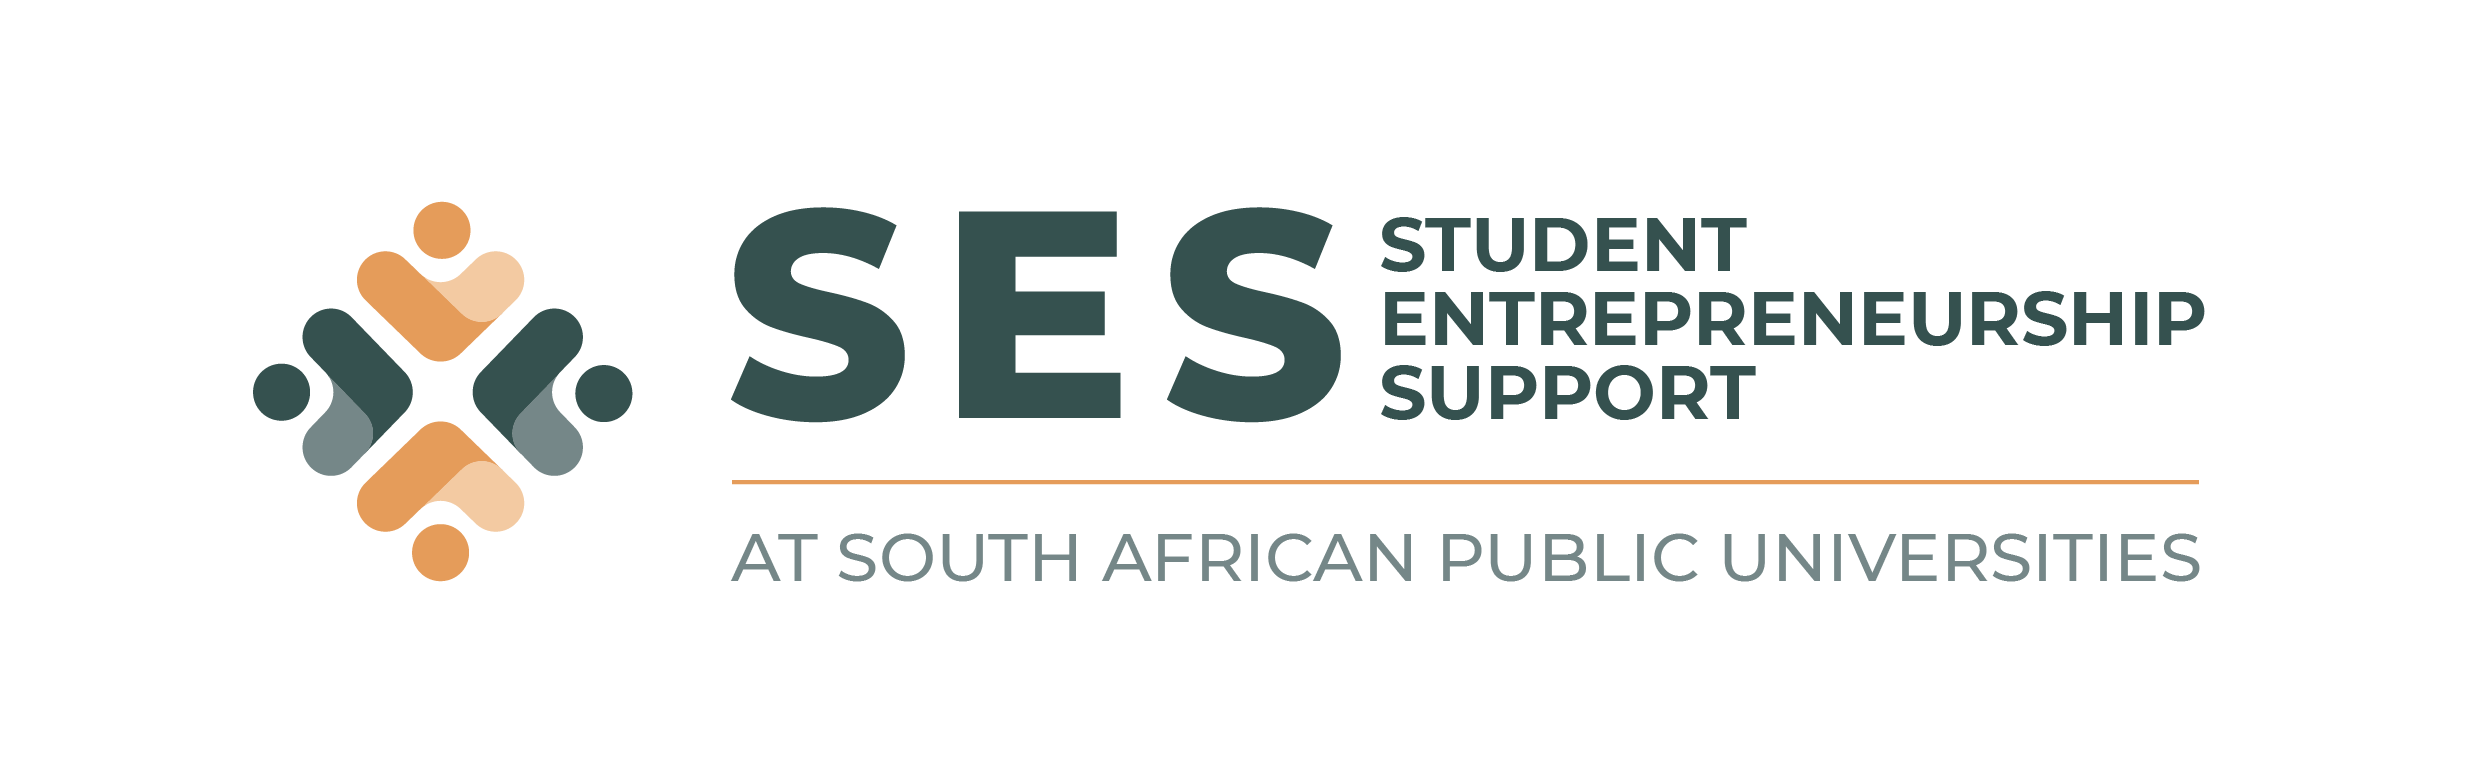 Student Entrepreneurship Support logo